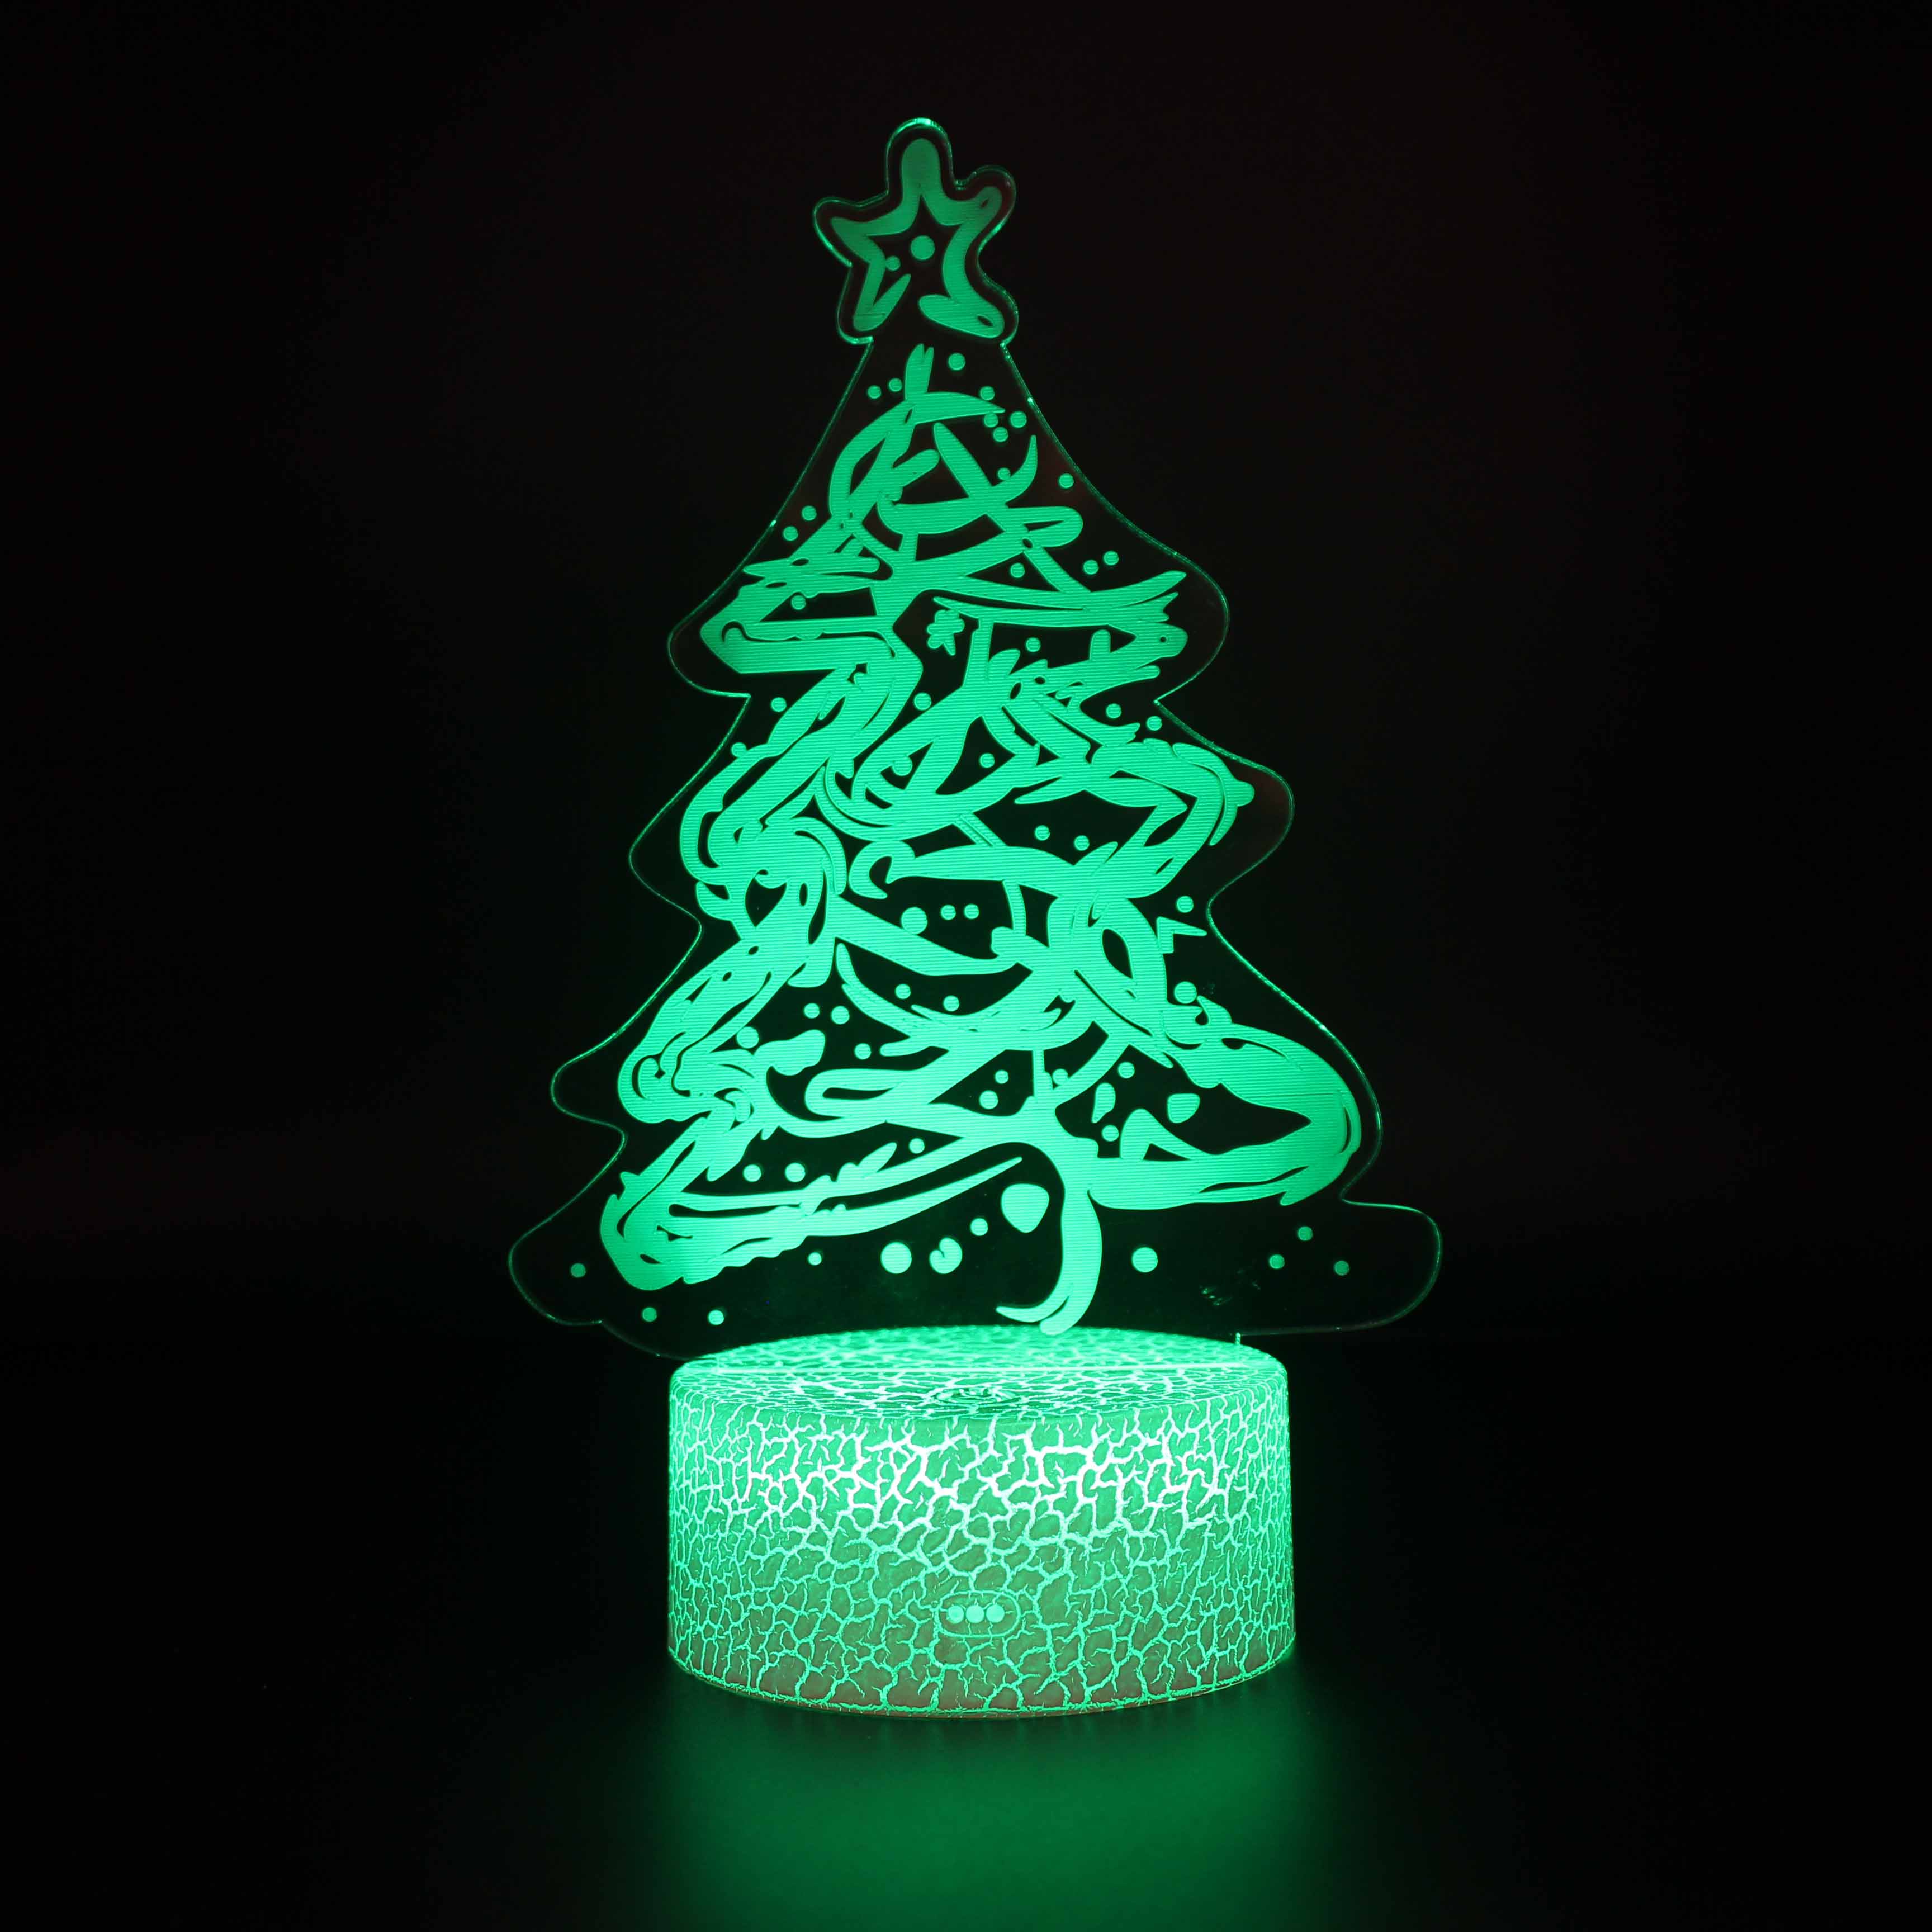 Acrílico Luz 3D Regalo decorativo para niños Lámpara de ilusión 3D Control táctil LED Visualización de ilusión óptica Letrero de Navidad Lámpara de luz nocturna LED